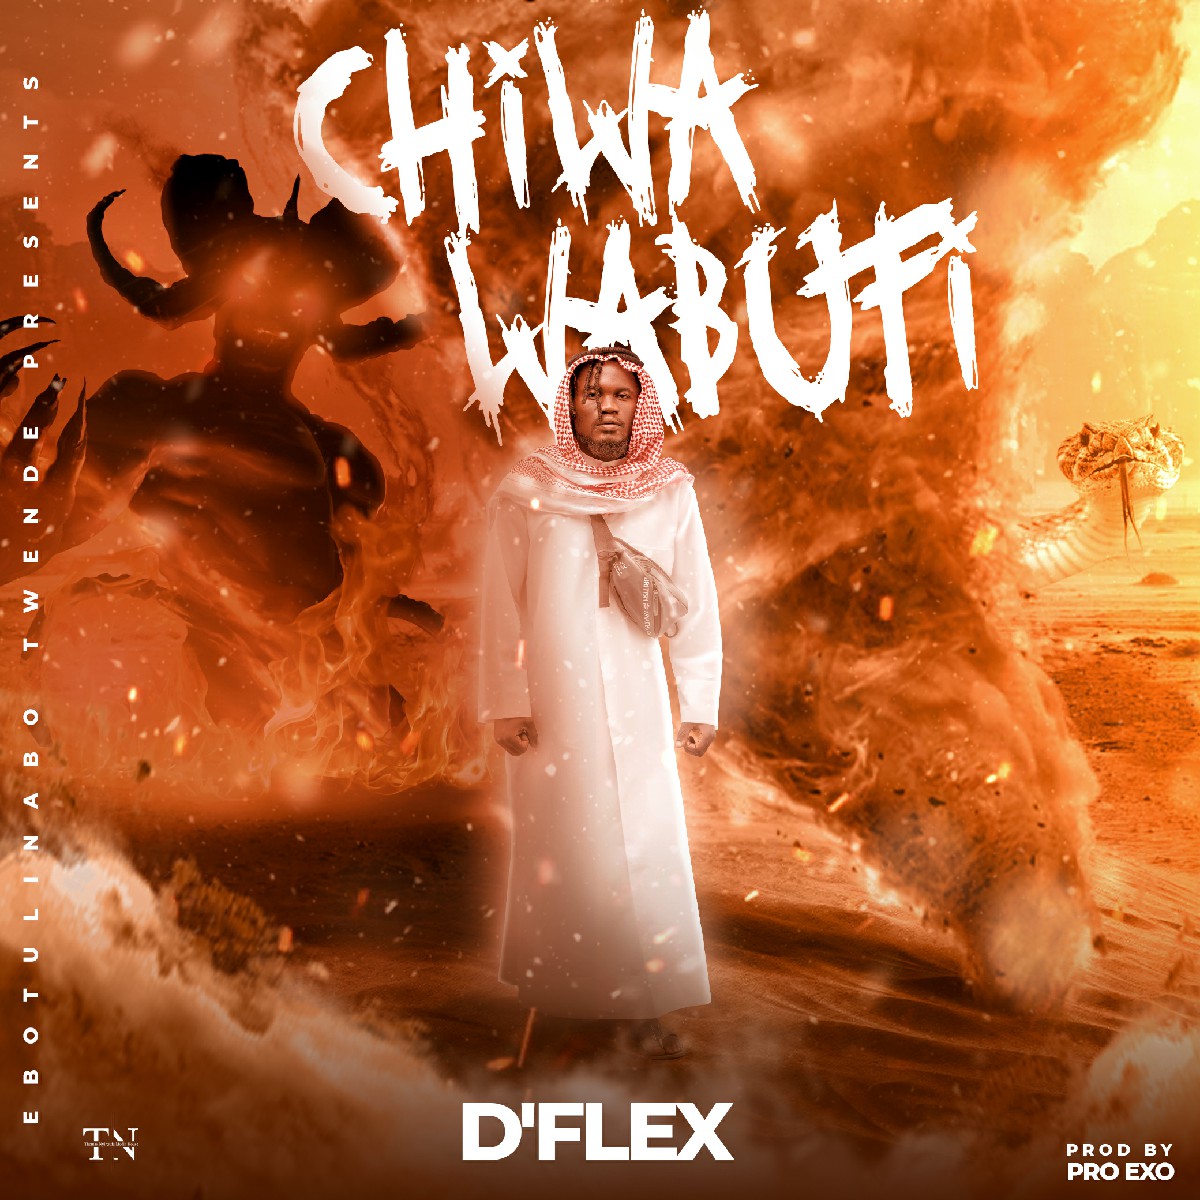 D'Flex - Chiwa Wabufi (Prod. Pro Exo)